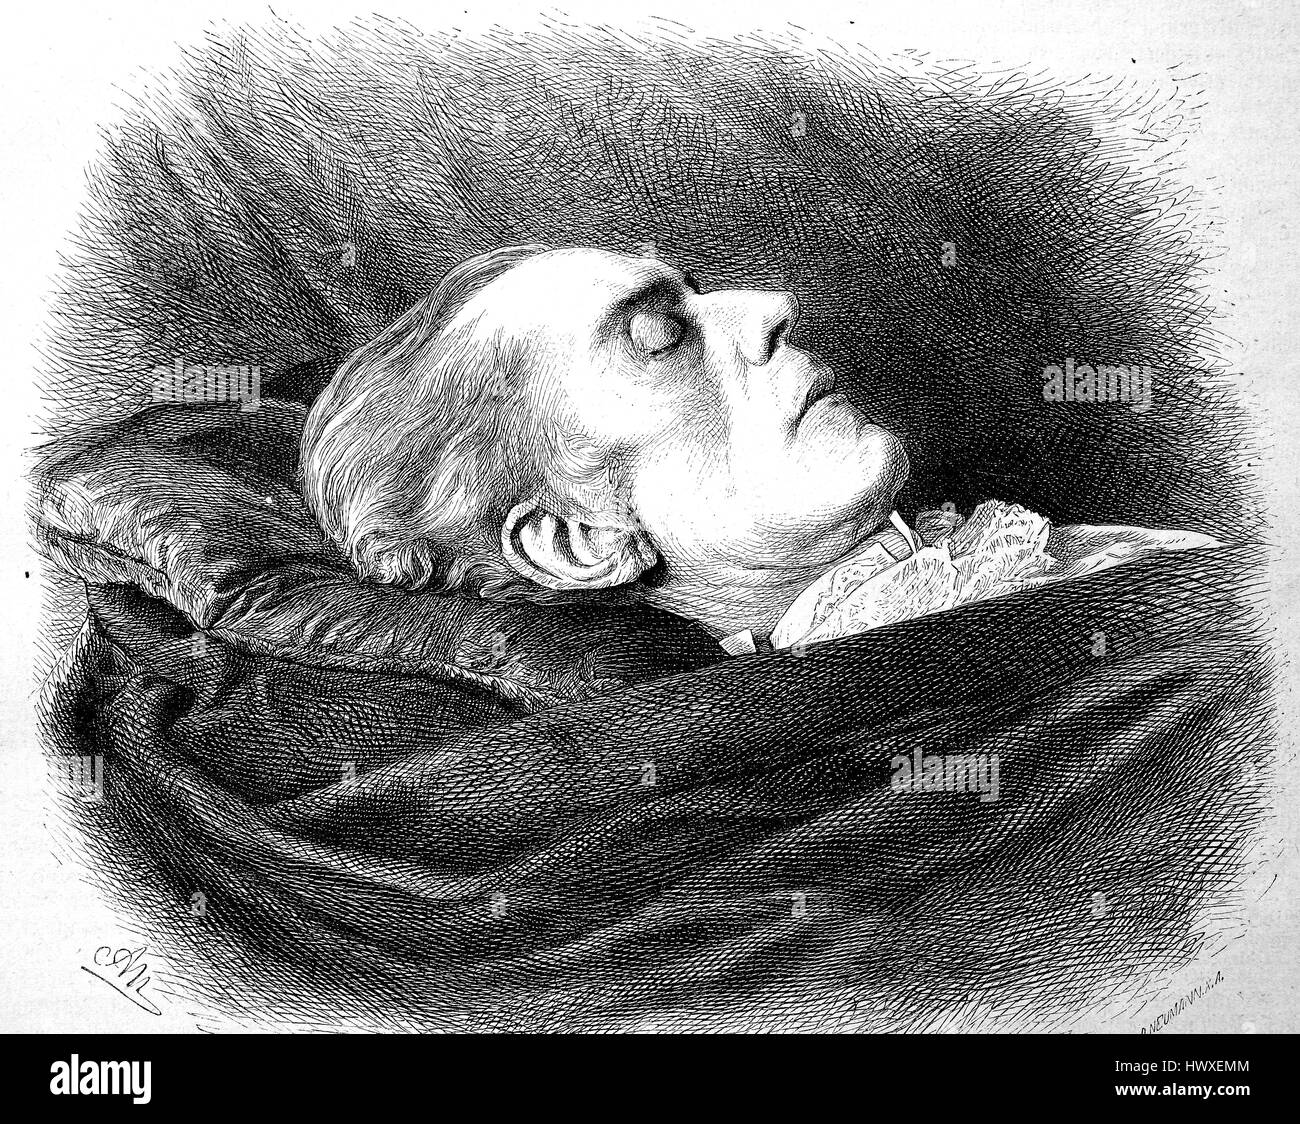 David Friedrich Strauss sur le lit de mort, le 27 janvier 1808 à Ludwigsburg - 8 février 1874, était un écrivain, philosophe et théologien, l'Allemagne, la reproduction d'une image, gravure sur bois de l'année 1881, l'amélioration numérique Banque D'Images